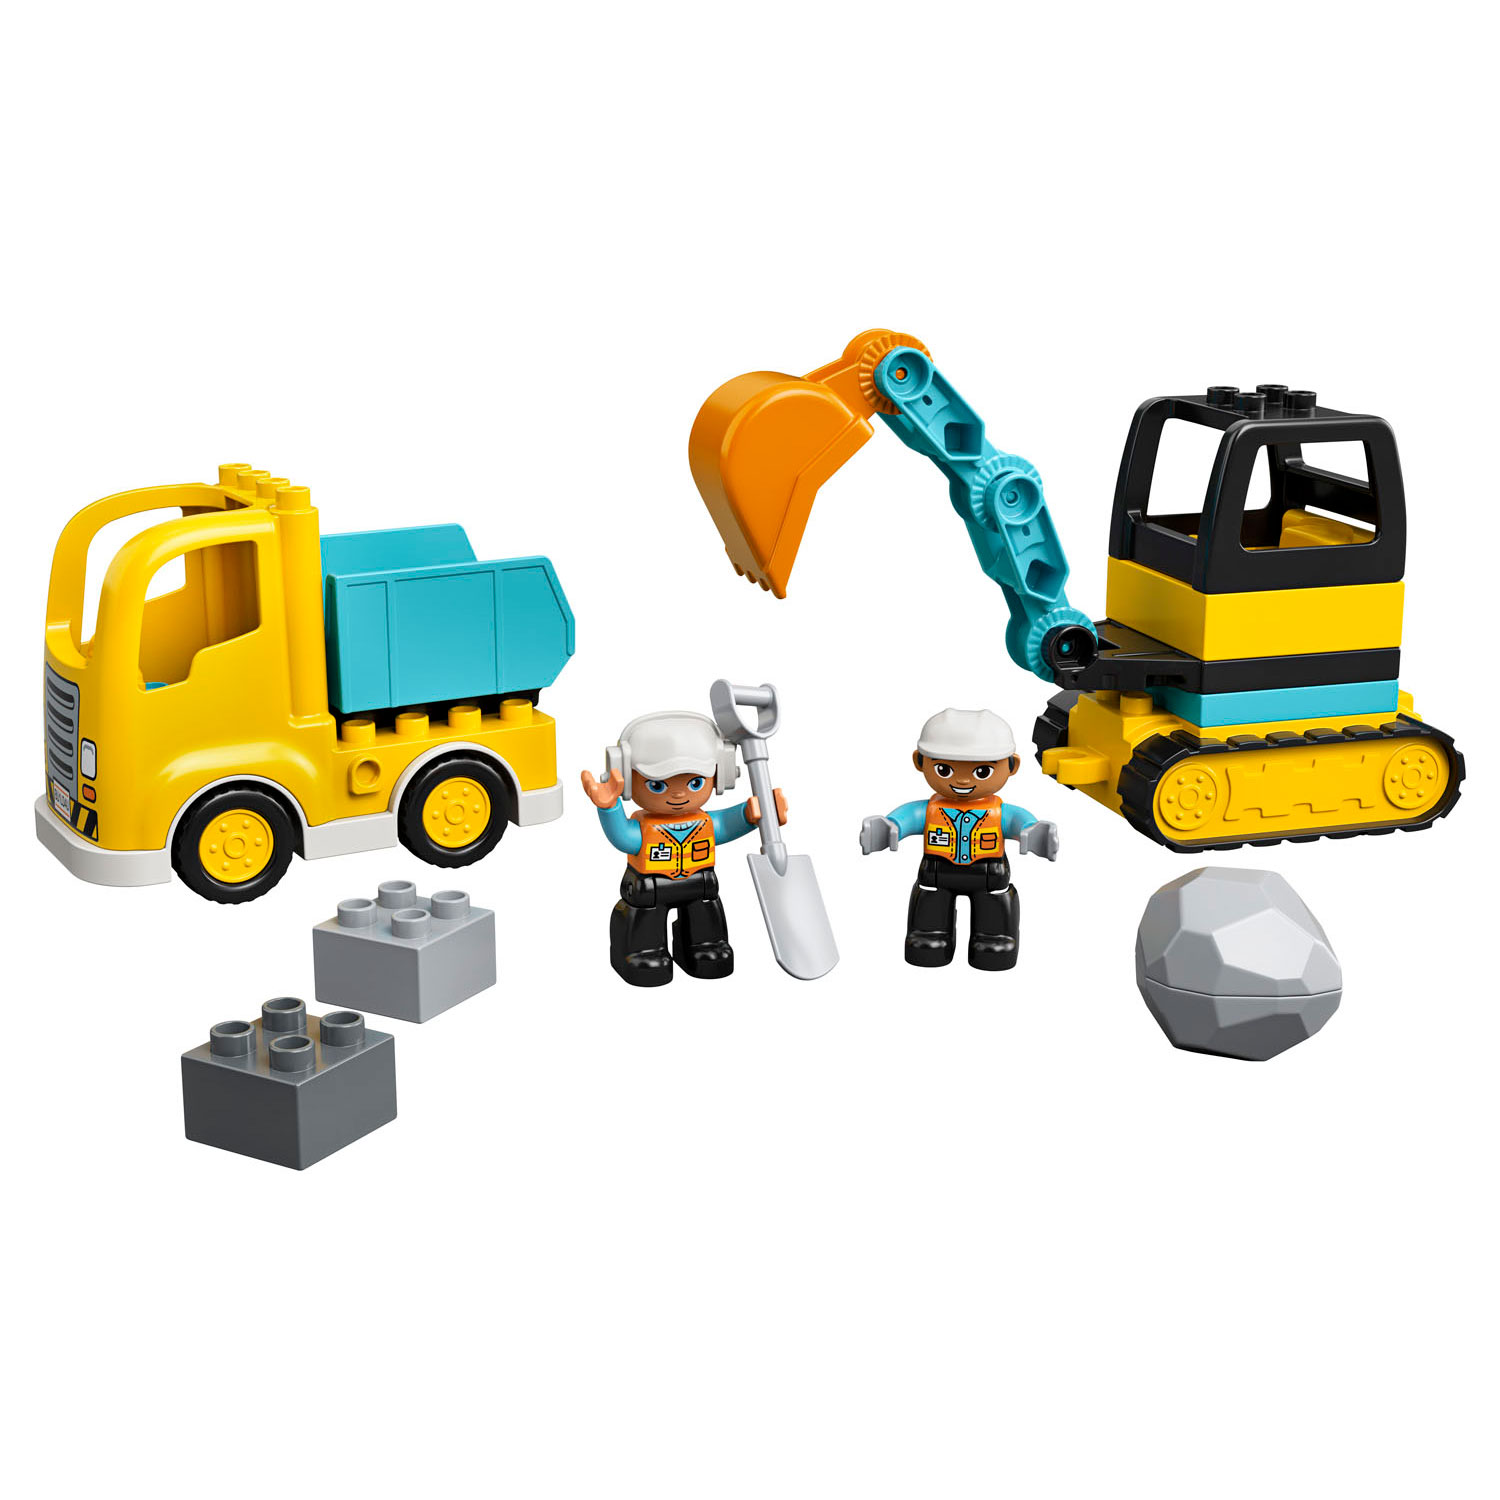 LEGO Duplo 10931 La pelle en camion avec chenilles